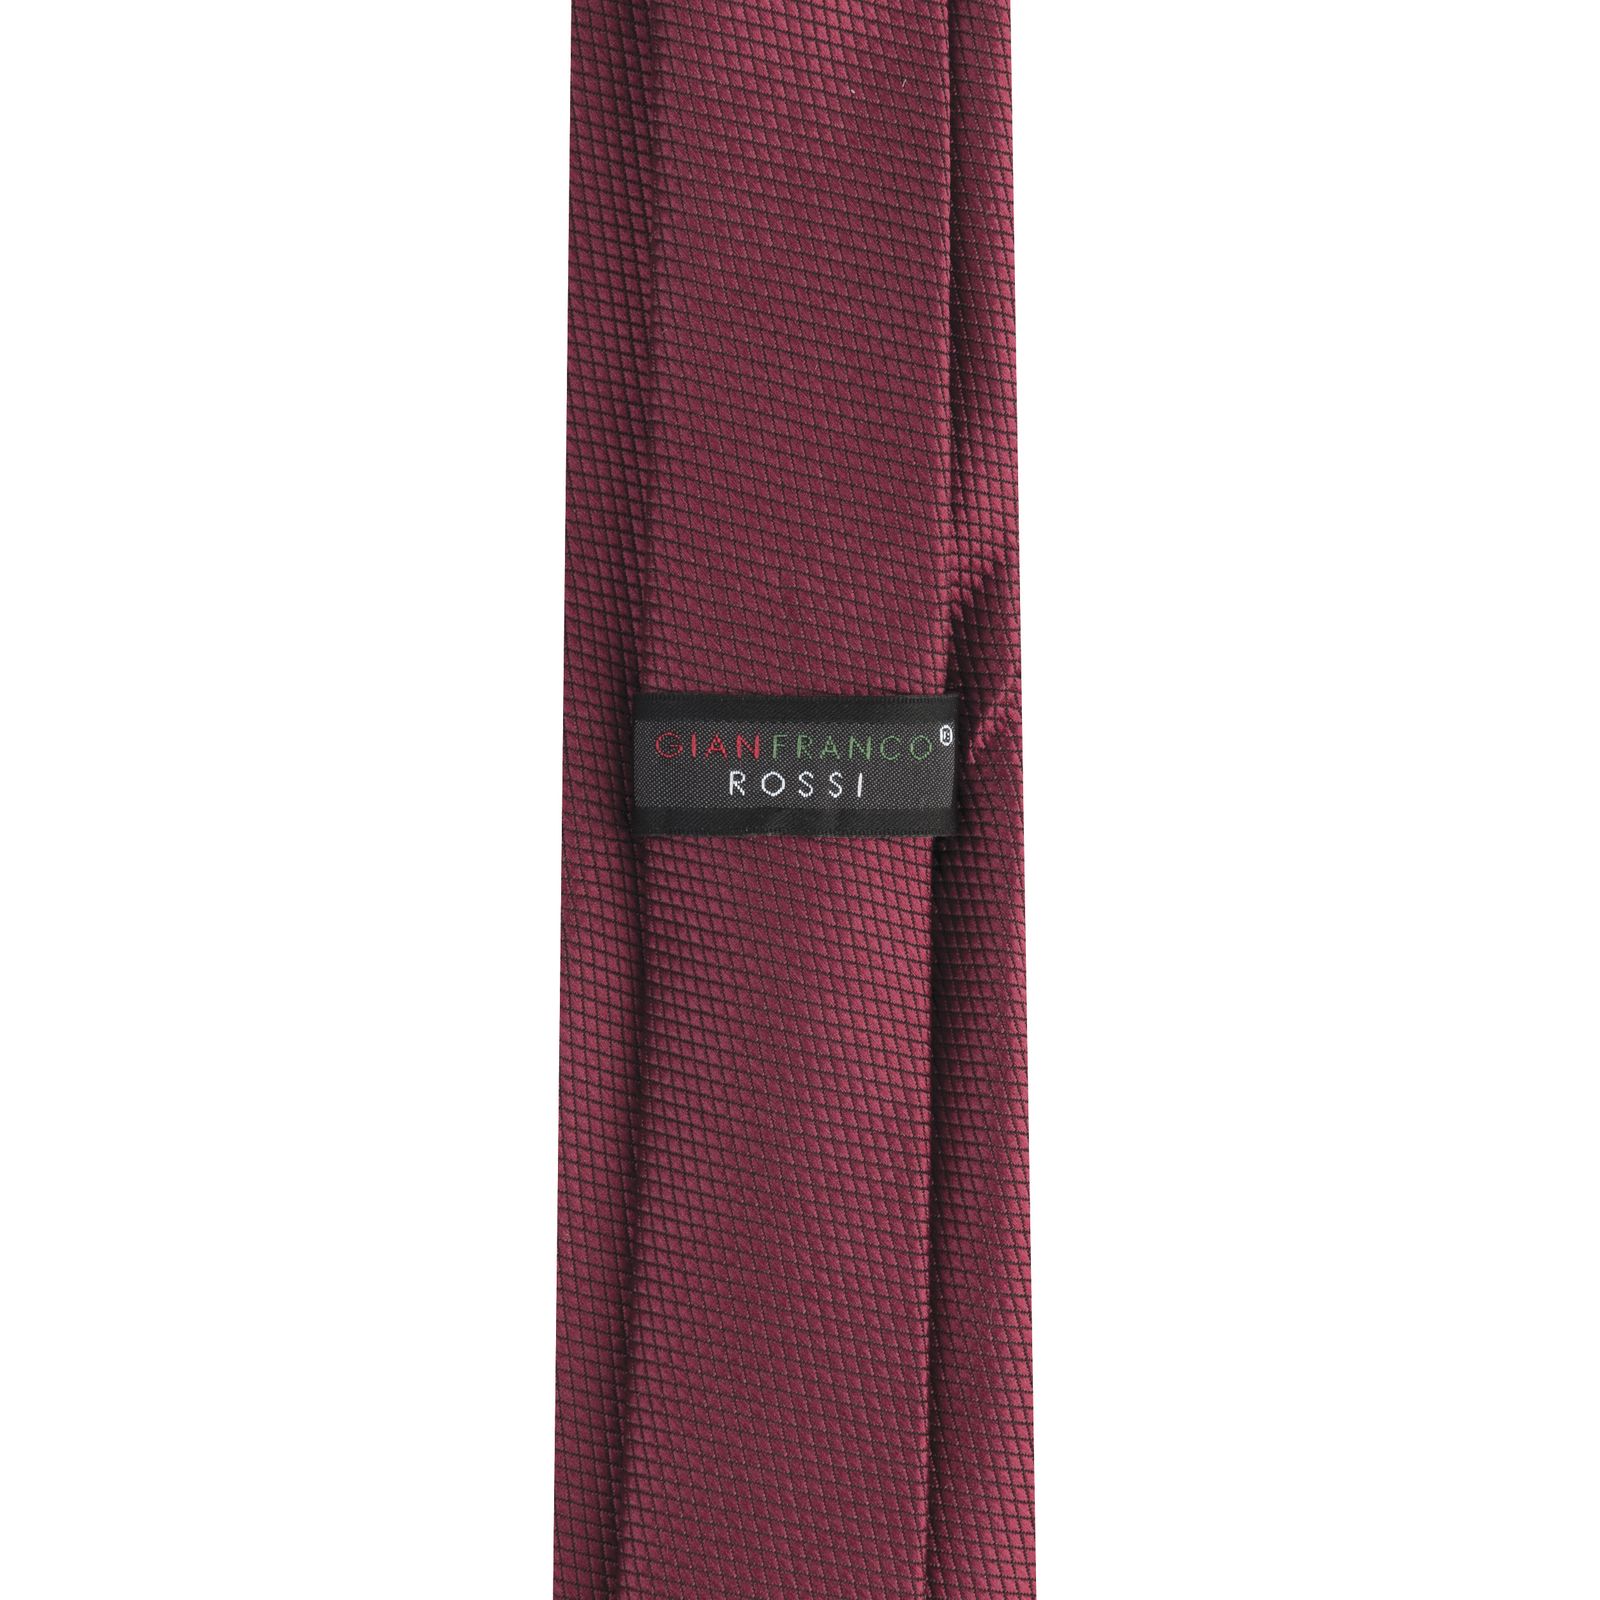  ست کراوات و دستمال جیب و گل کت مردانه جیان فرانکو روسی مدل GF-ST679-BE -  - 5